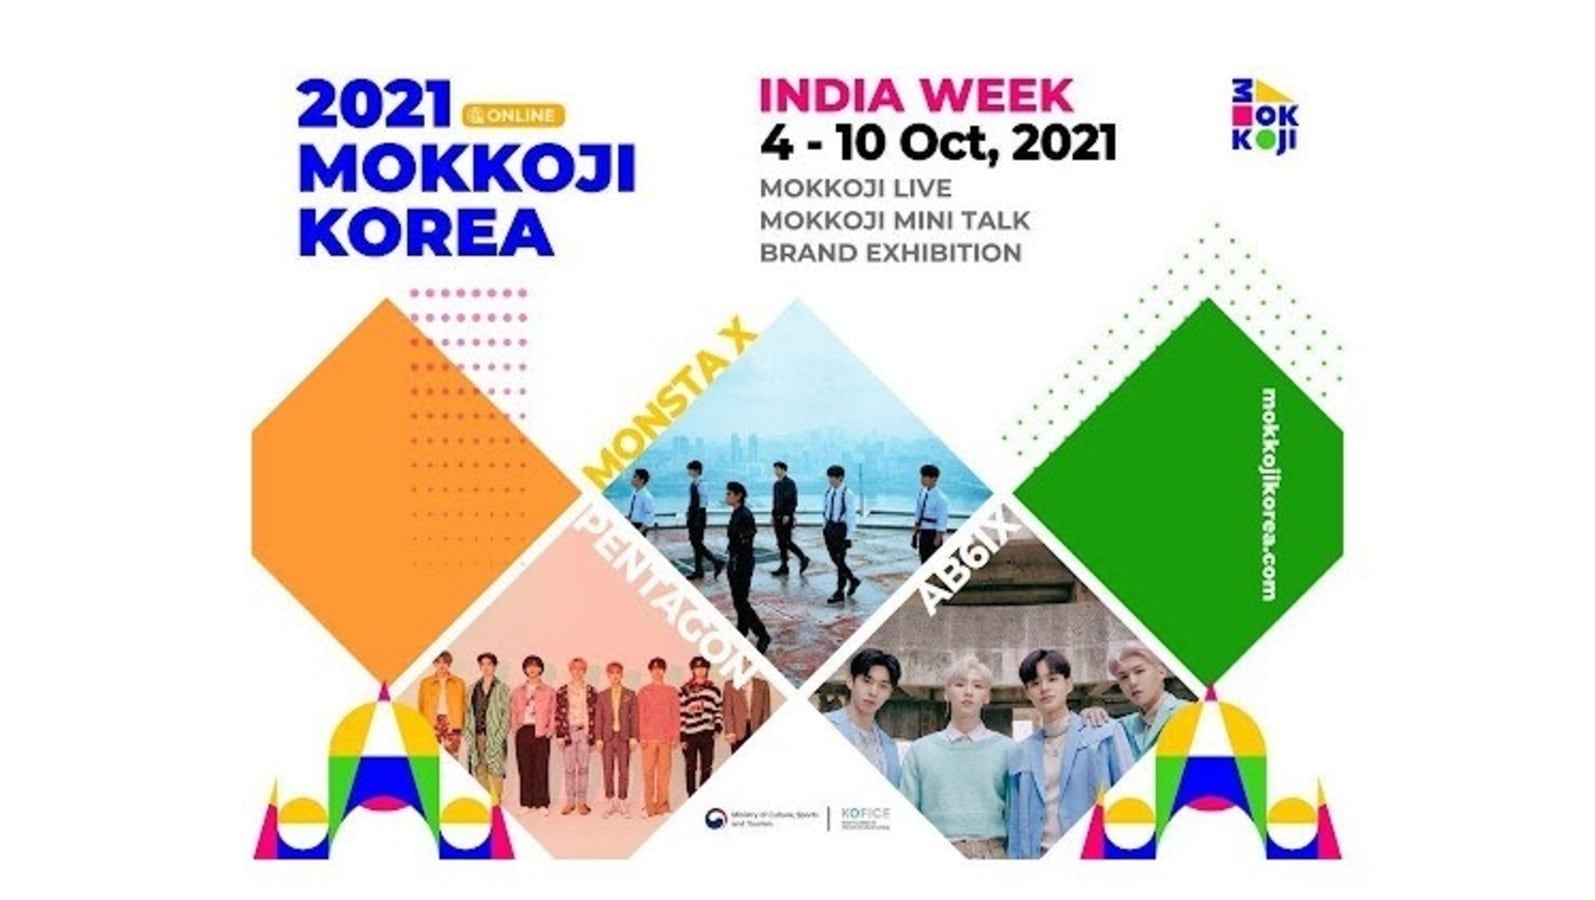 K-POP 스타 박힌 2021MOKKOJIKOREA이 스페셜 인디아 위크를 개최